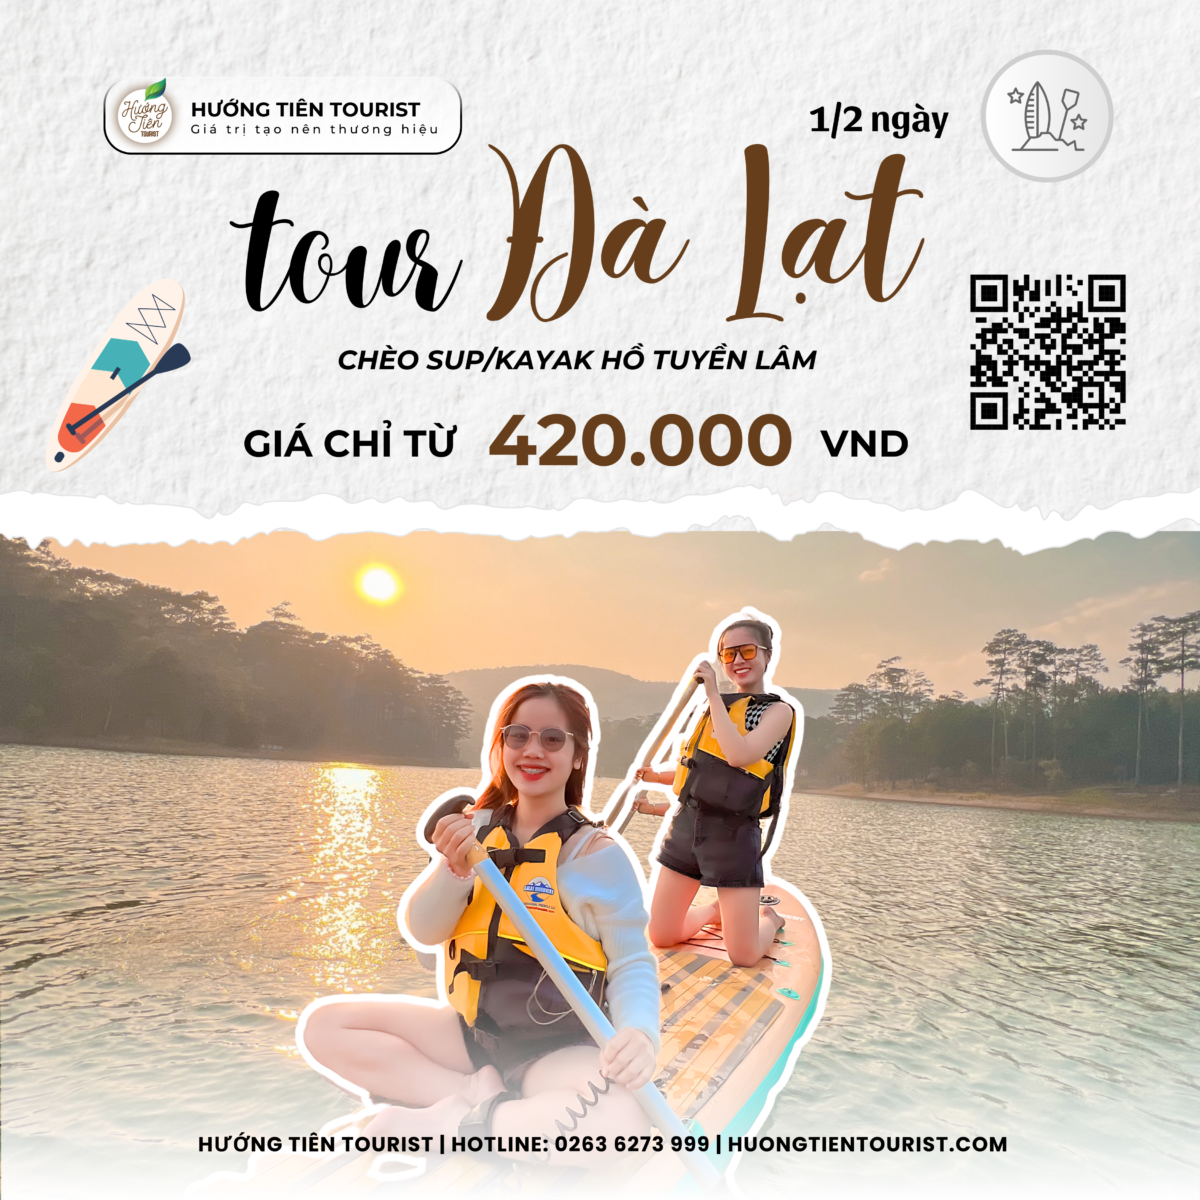 Chèo thuyền Kayak Hồ Tuyền Lâm | Tour Đà Lạt | 1/2 Ngày